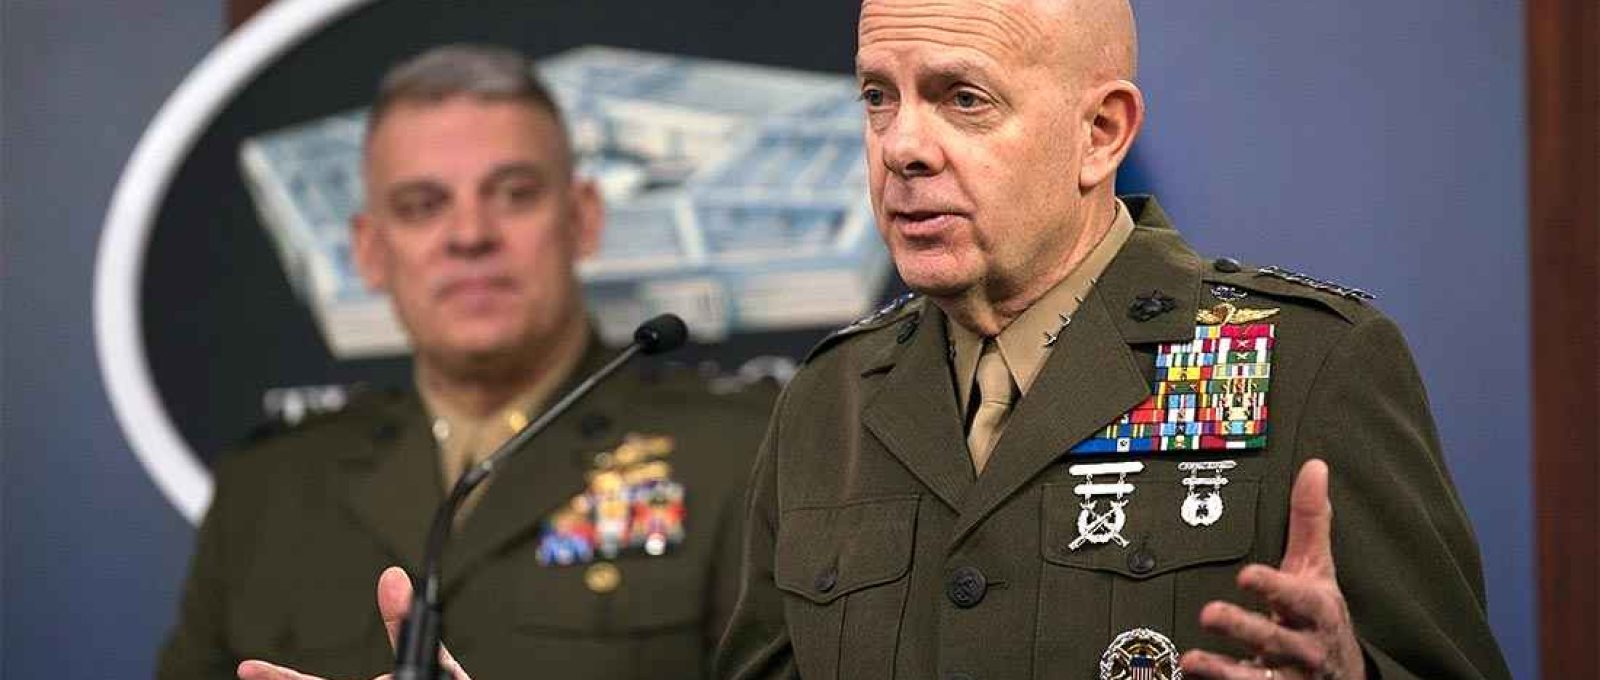 O comandante dos US Marines, general David H. Berger, em coletiva de imprensa no Pentágono em 26 de março de 2020 (Foto: Lisa Ferdinando/DoD).